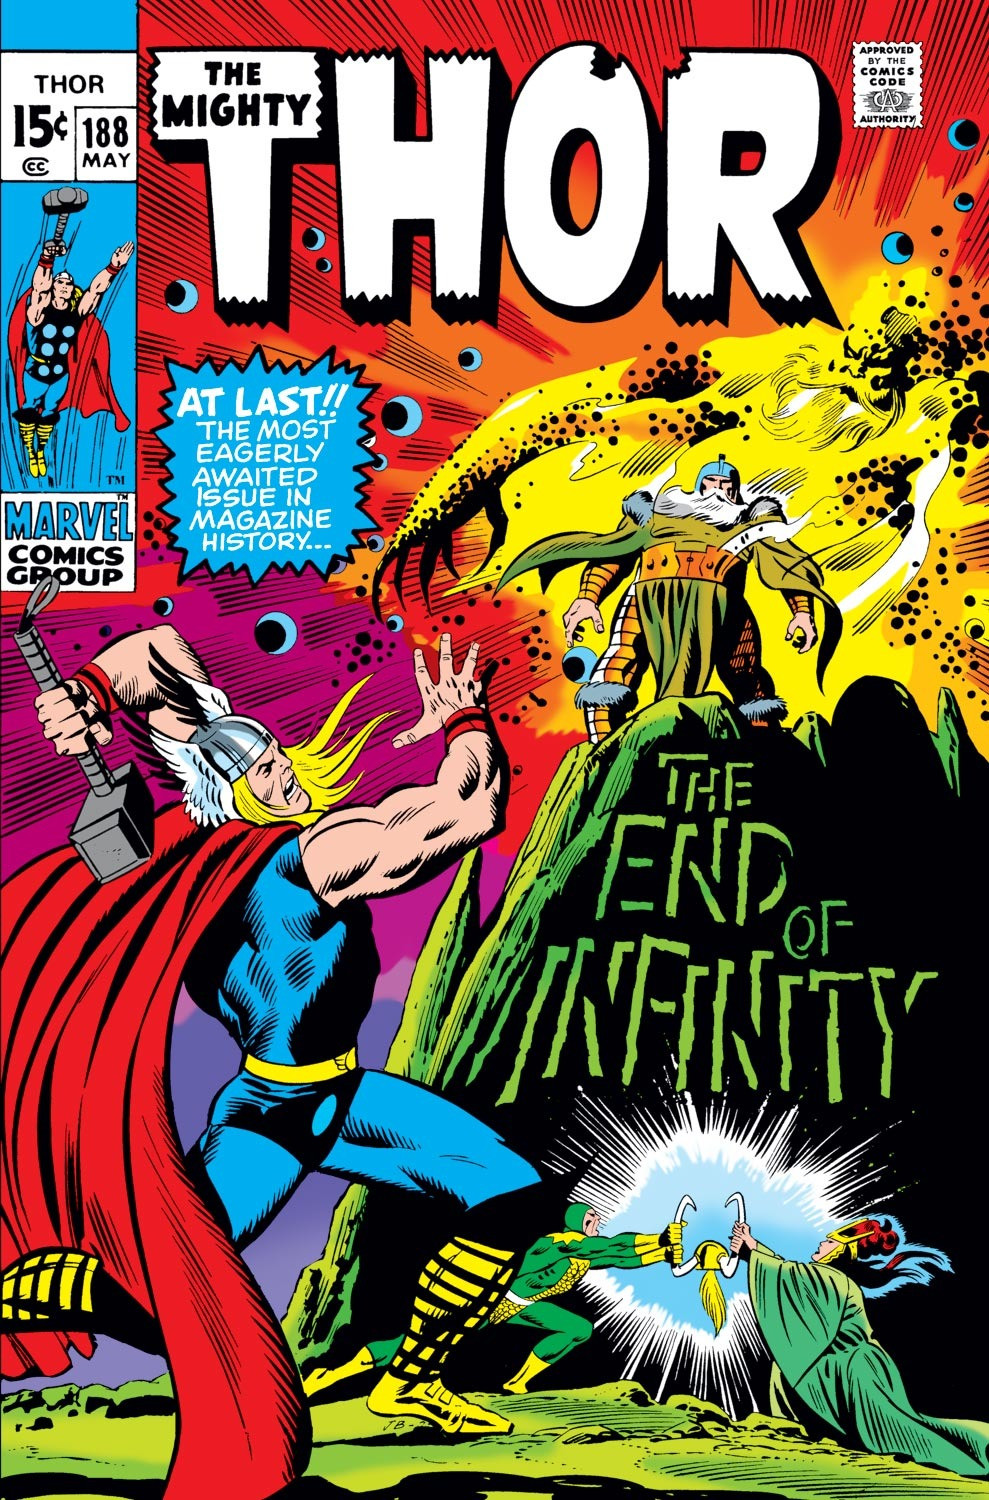 Thor #188 May 1971 VG 